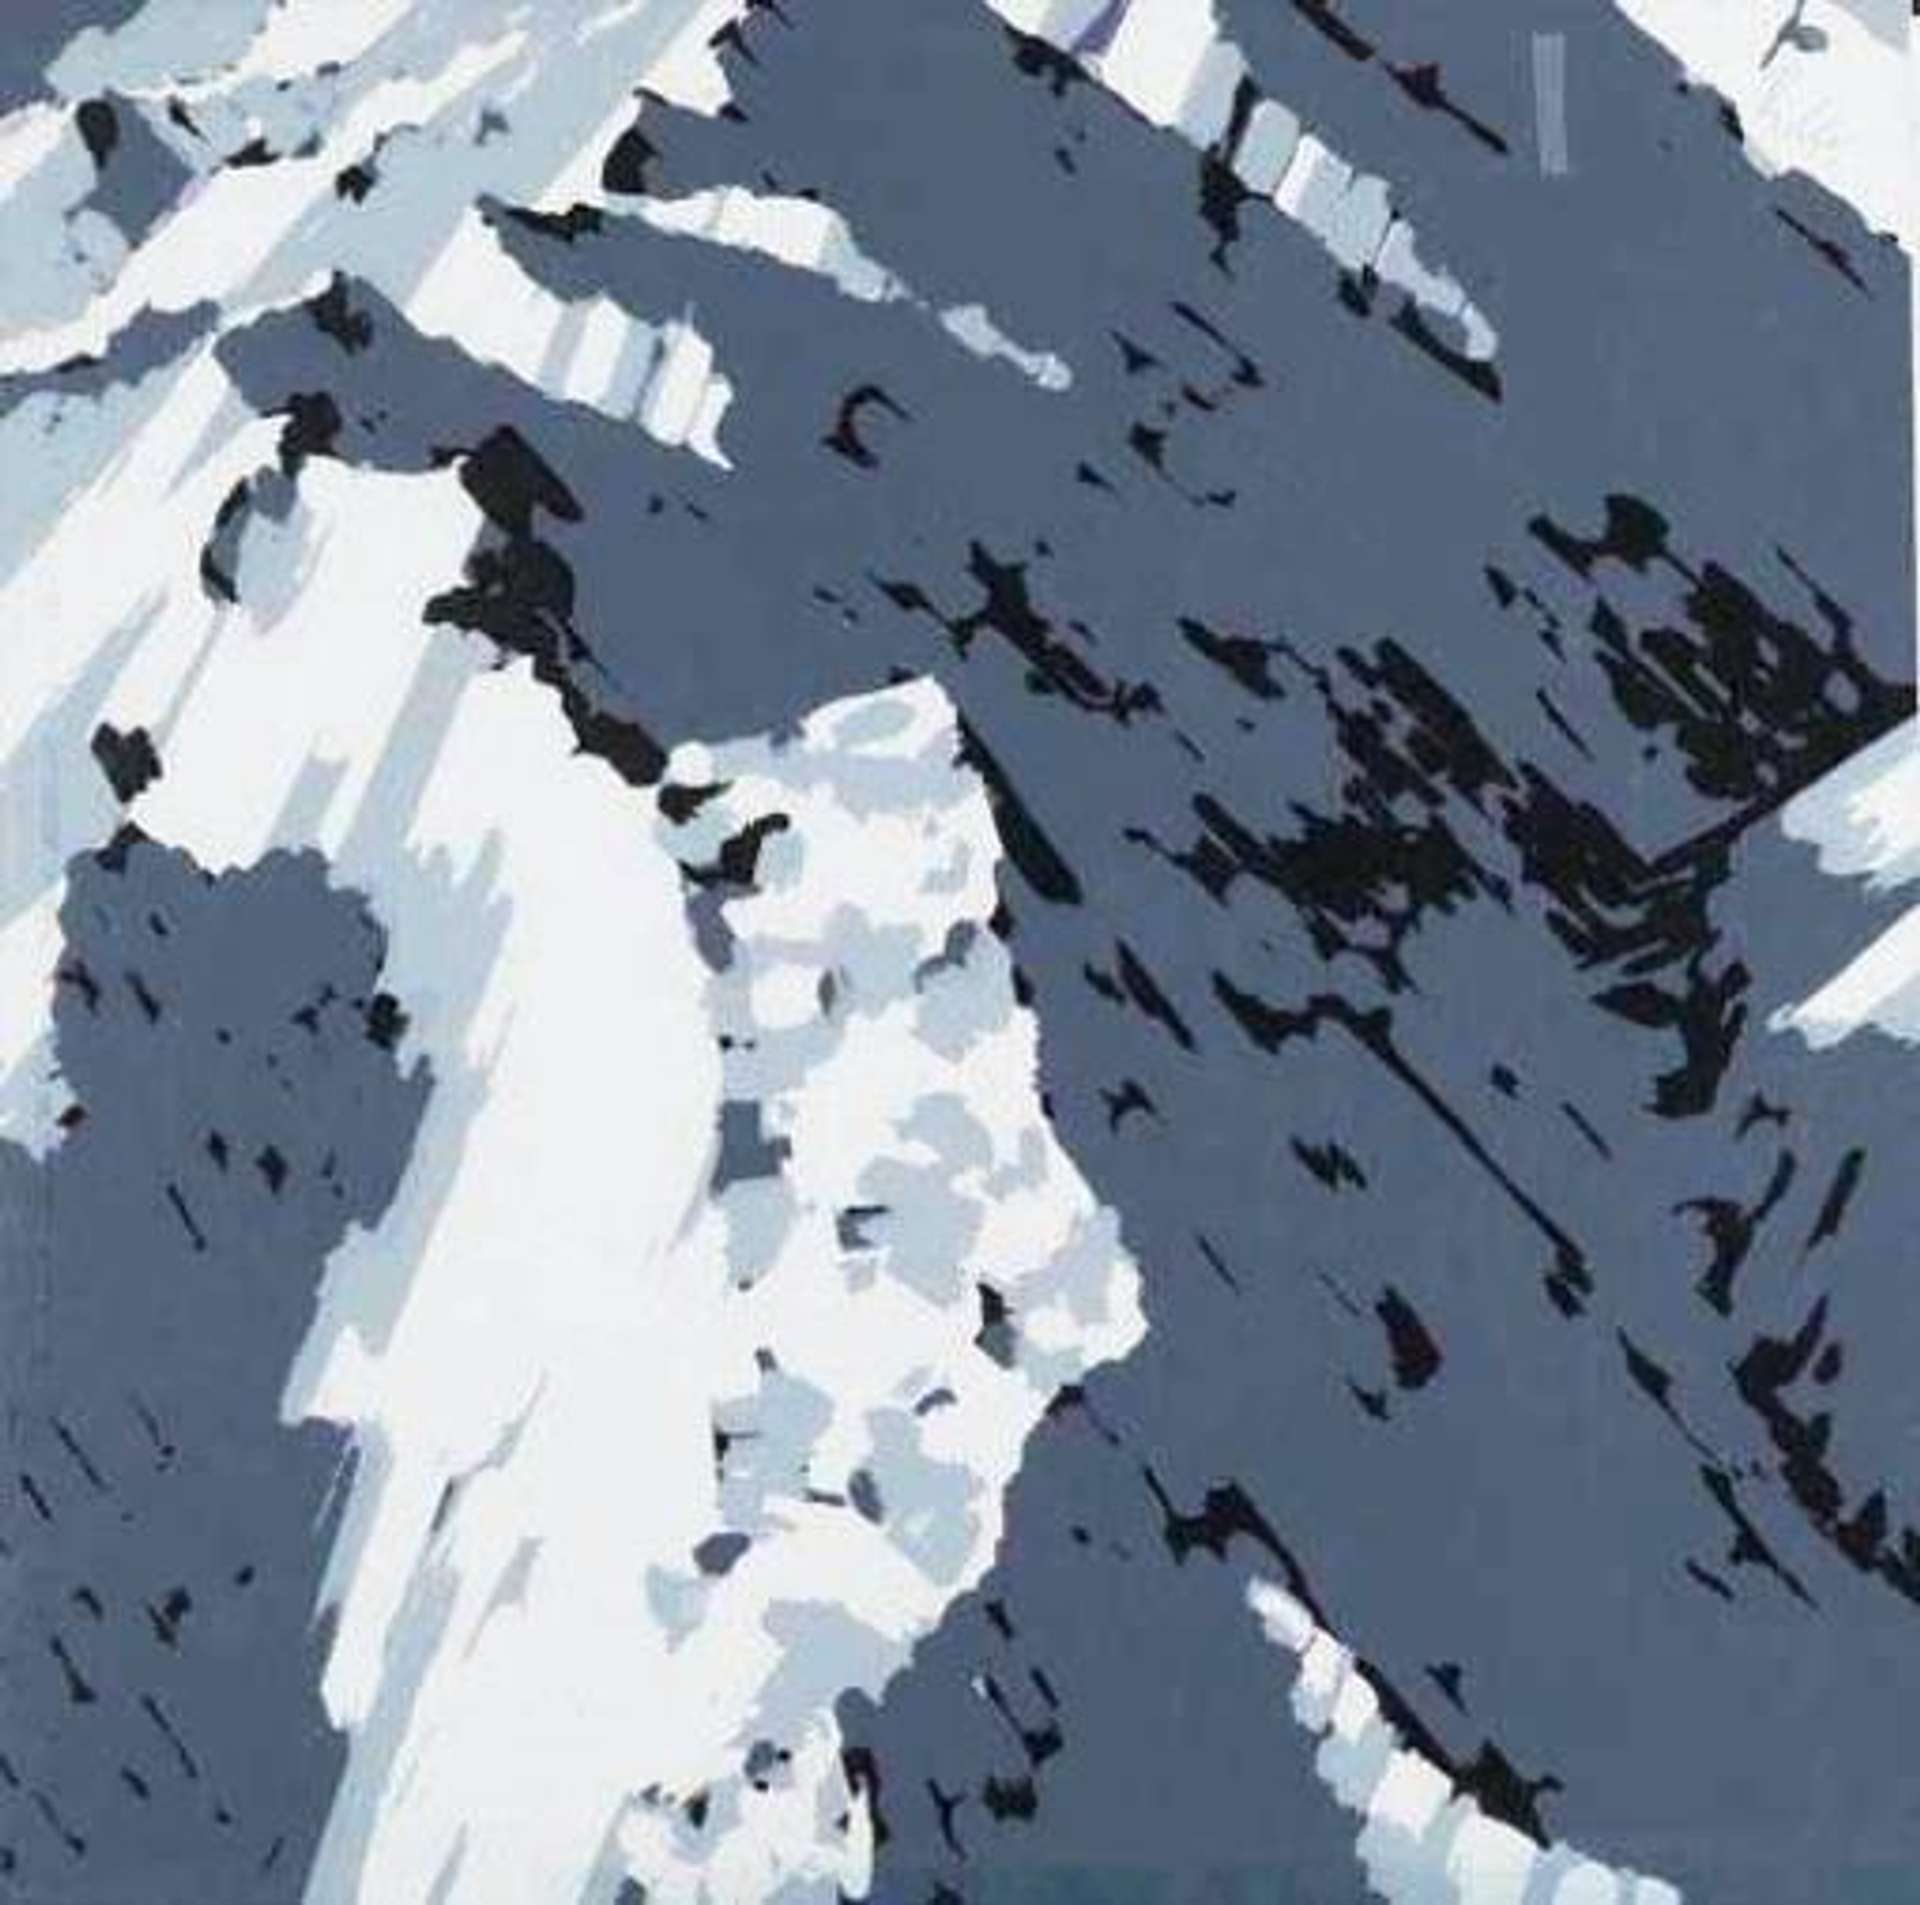 Schweizer Alpen I - A2 - Signed Print by Gerhard Richter 1969 - MyArtBroker